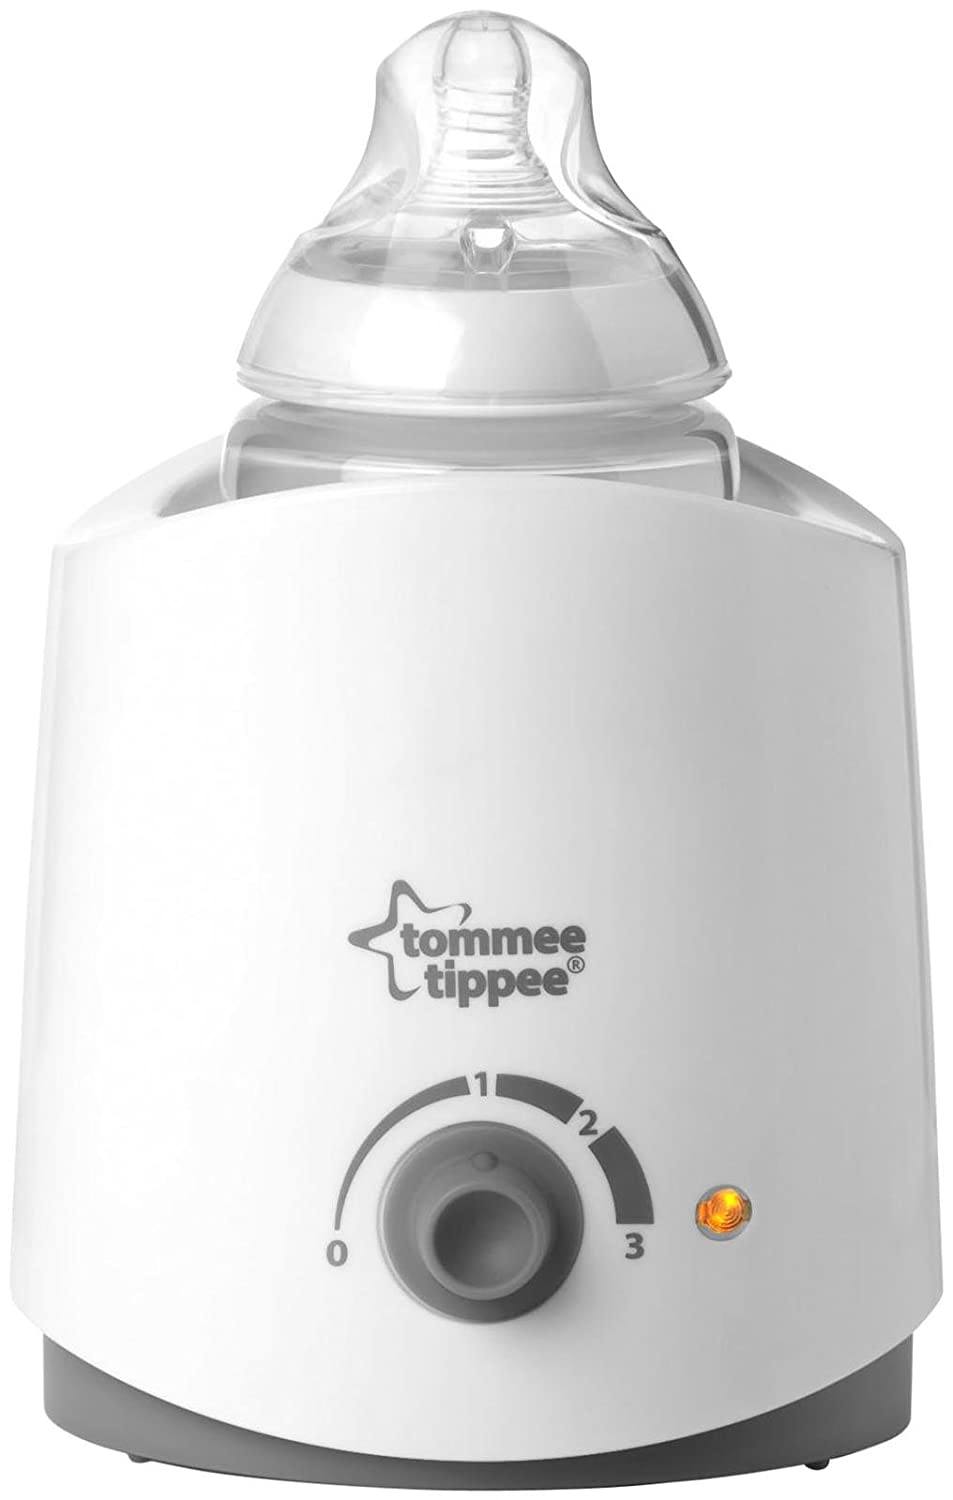 tommee-tippee-bottle-warmer